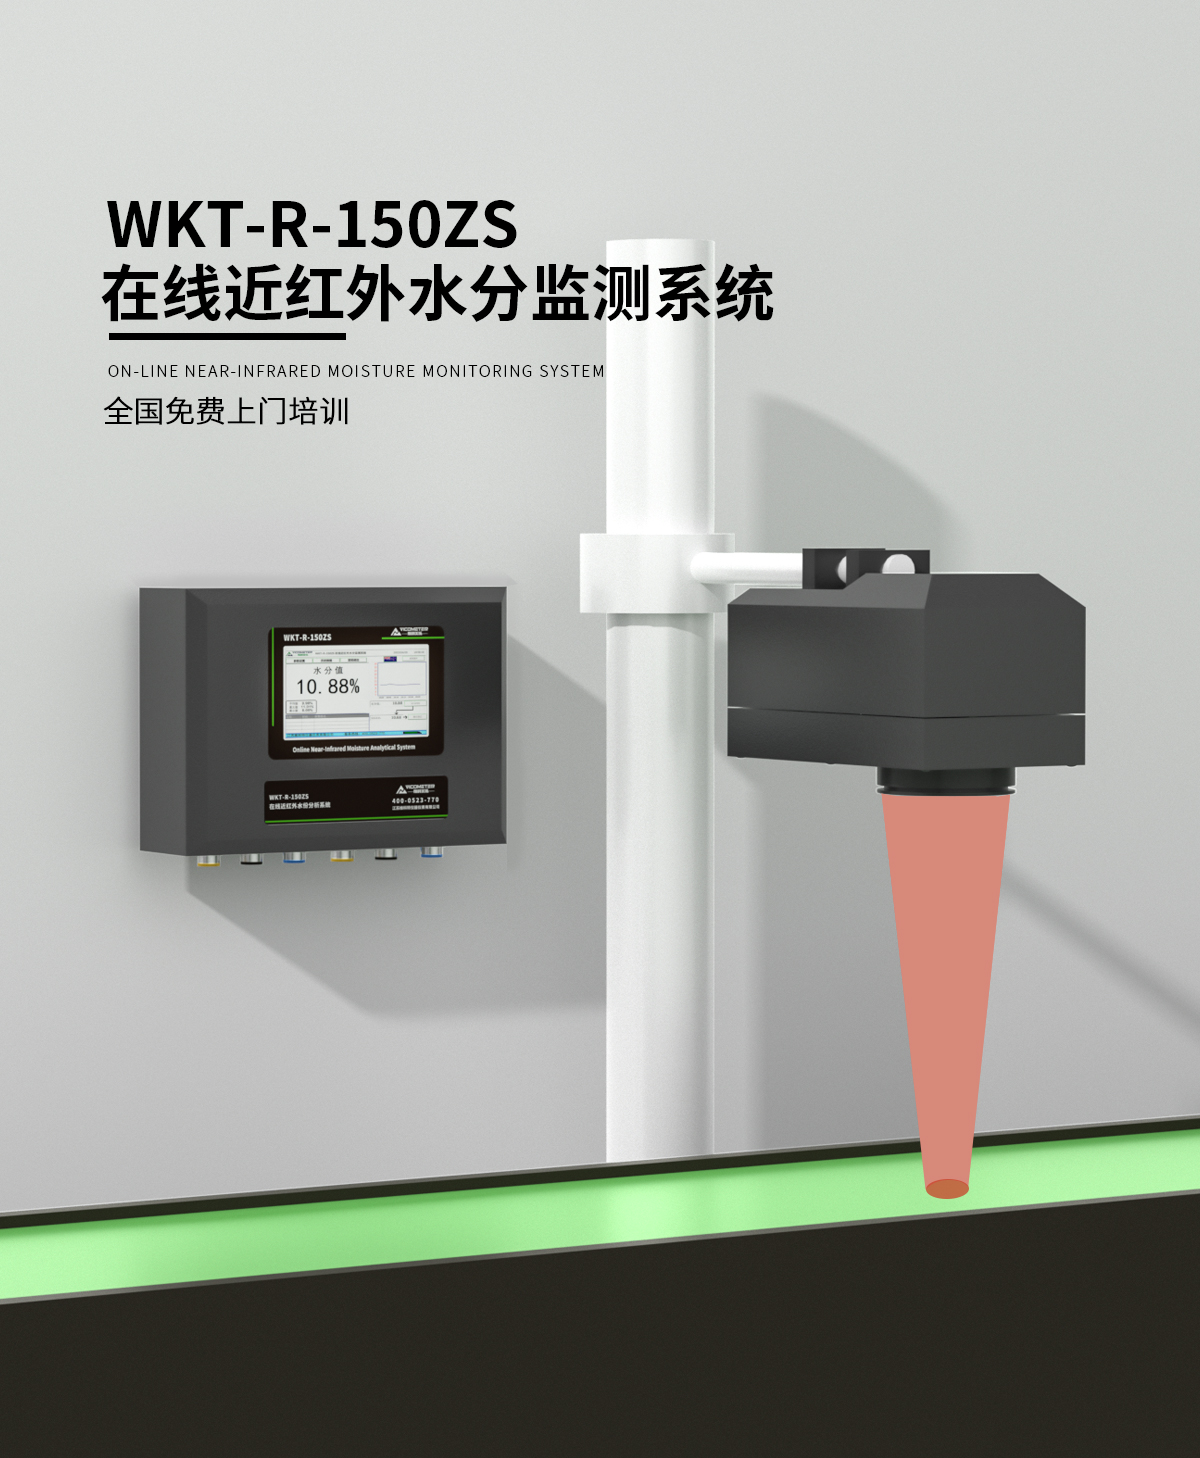 WKT-R-150ZS在线近红外水分监测系统_01.jpg